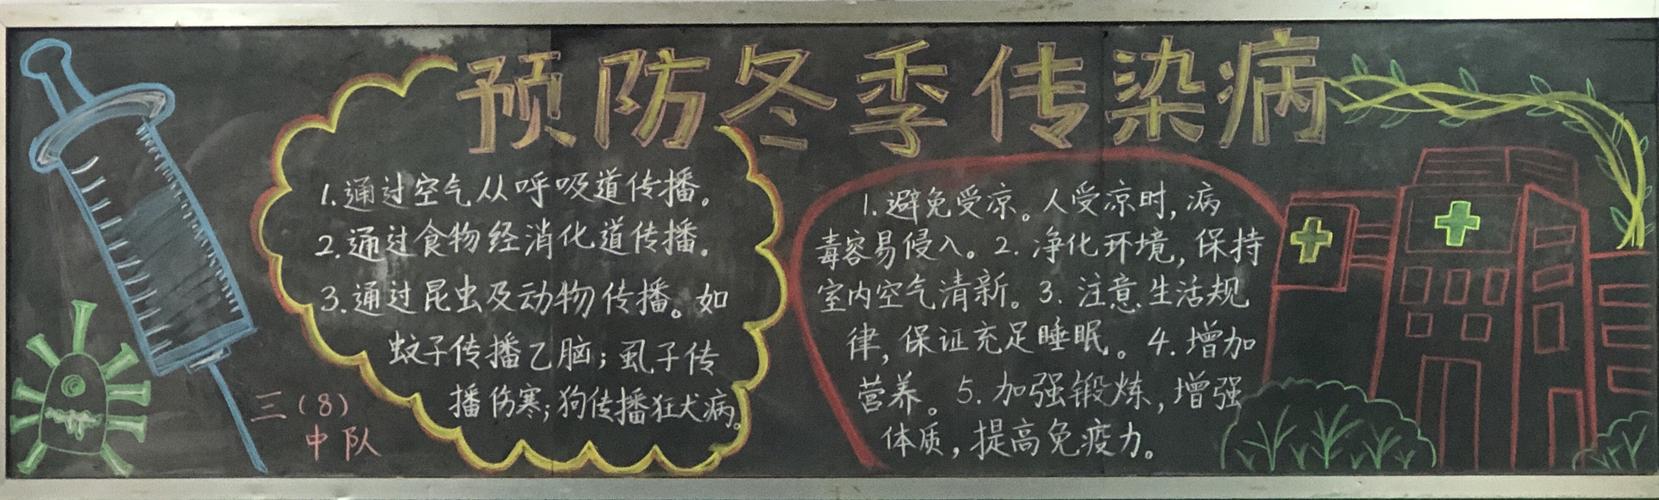 县北关小学预防冬季传染病和争做宪法小卫士主题黑板报评比活动